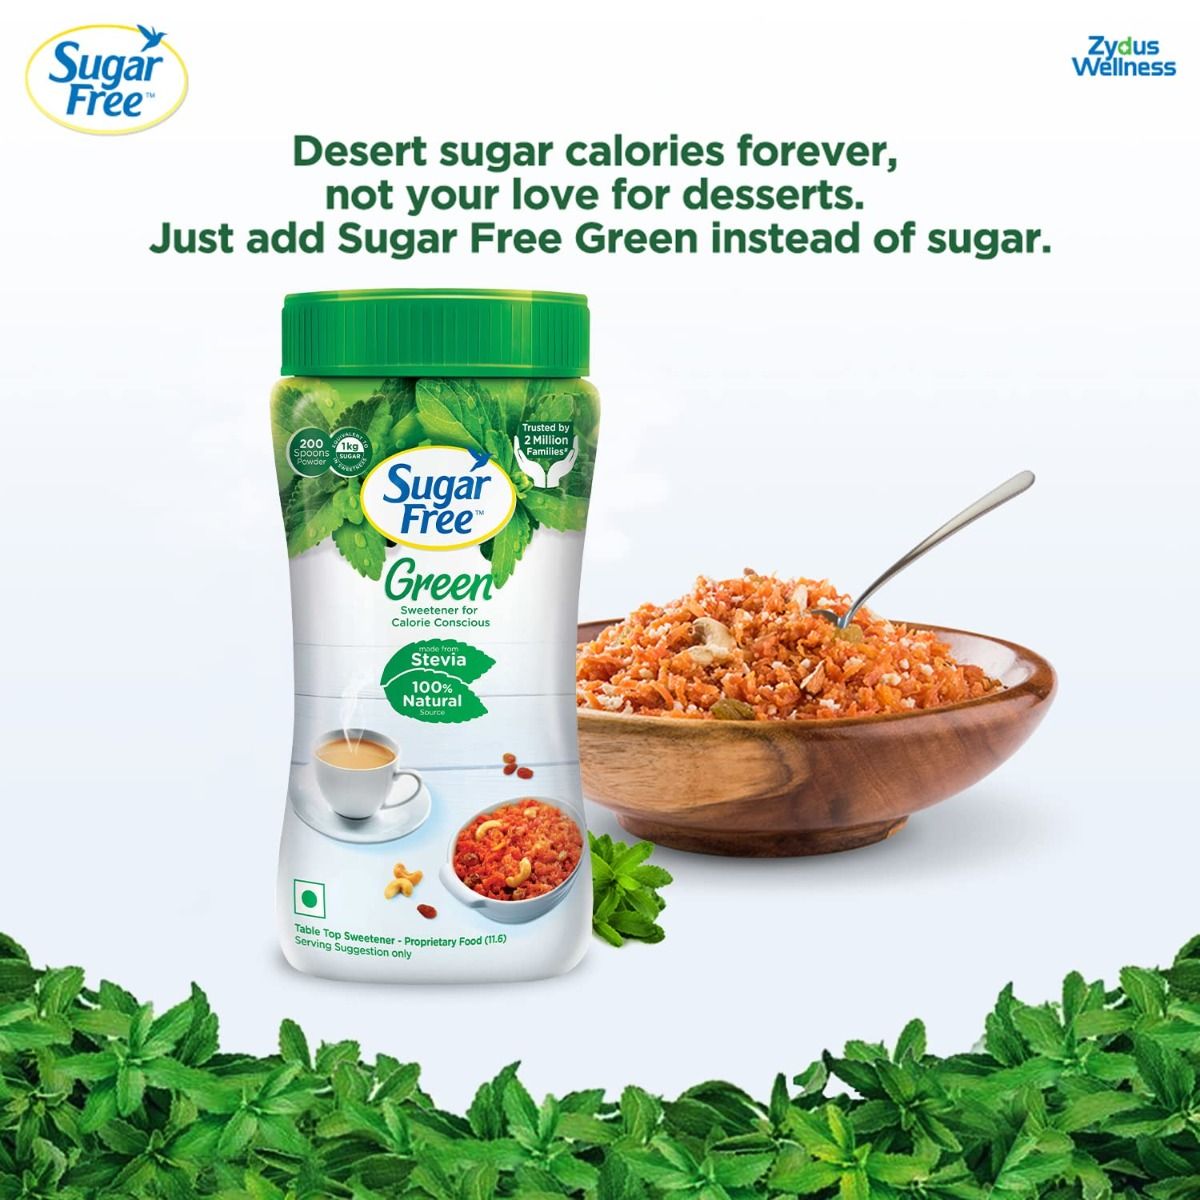 Sugar Free Green Stevia Low Calorie Sweetener Powder, 200 gm, Pack of 1 